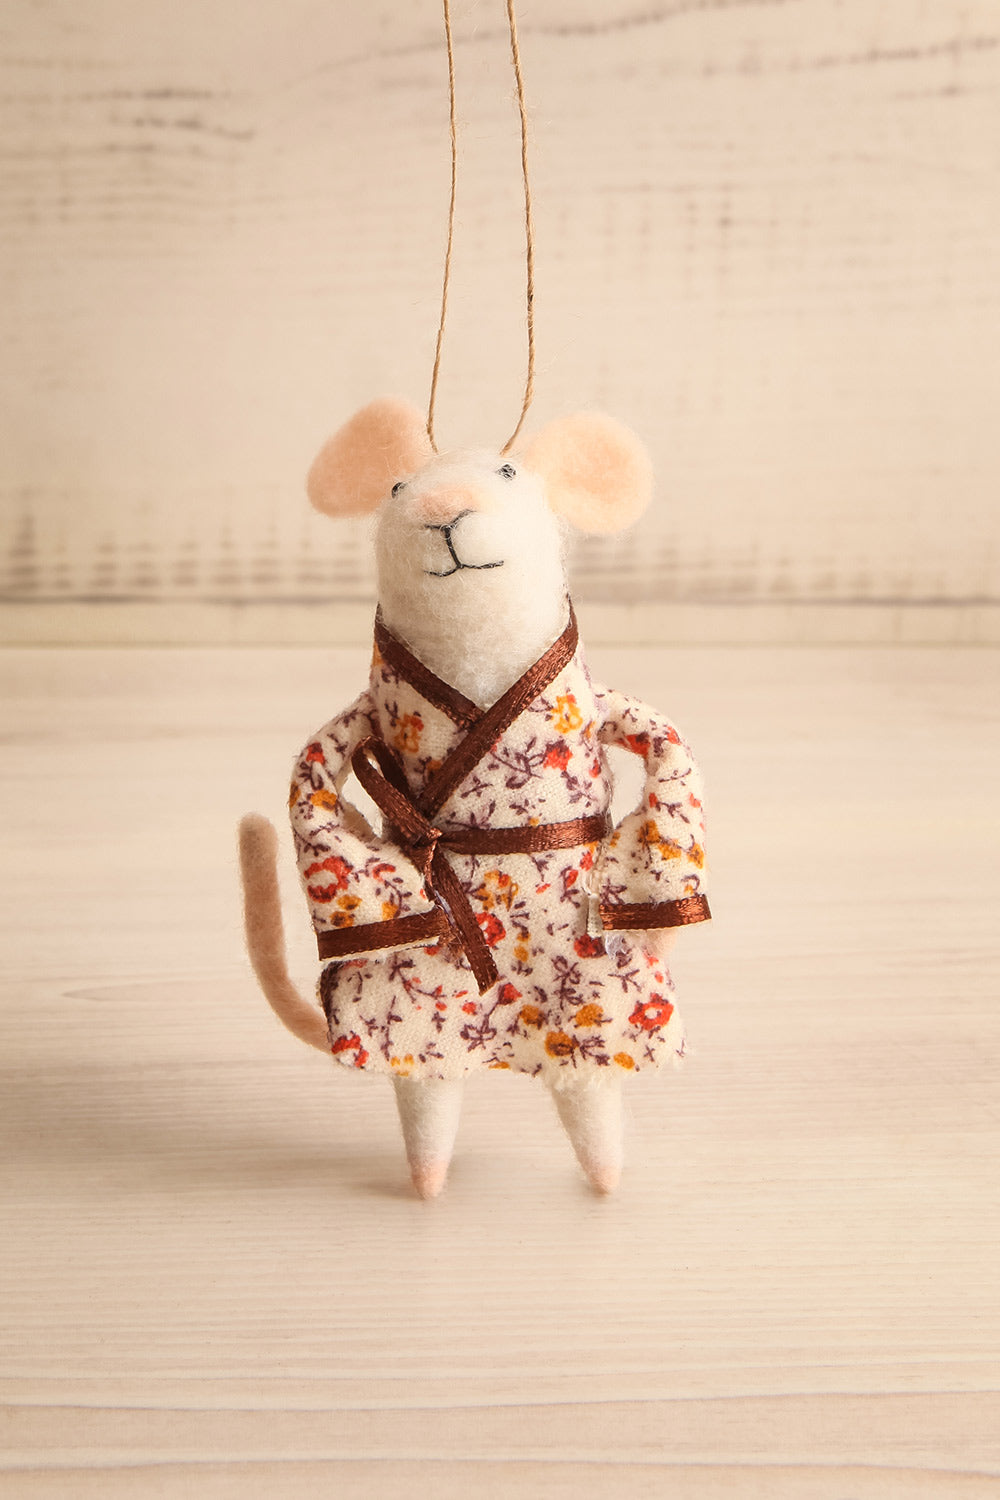 Pyjama Mouse Holiday Ornament | Maison garçonne patty